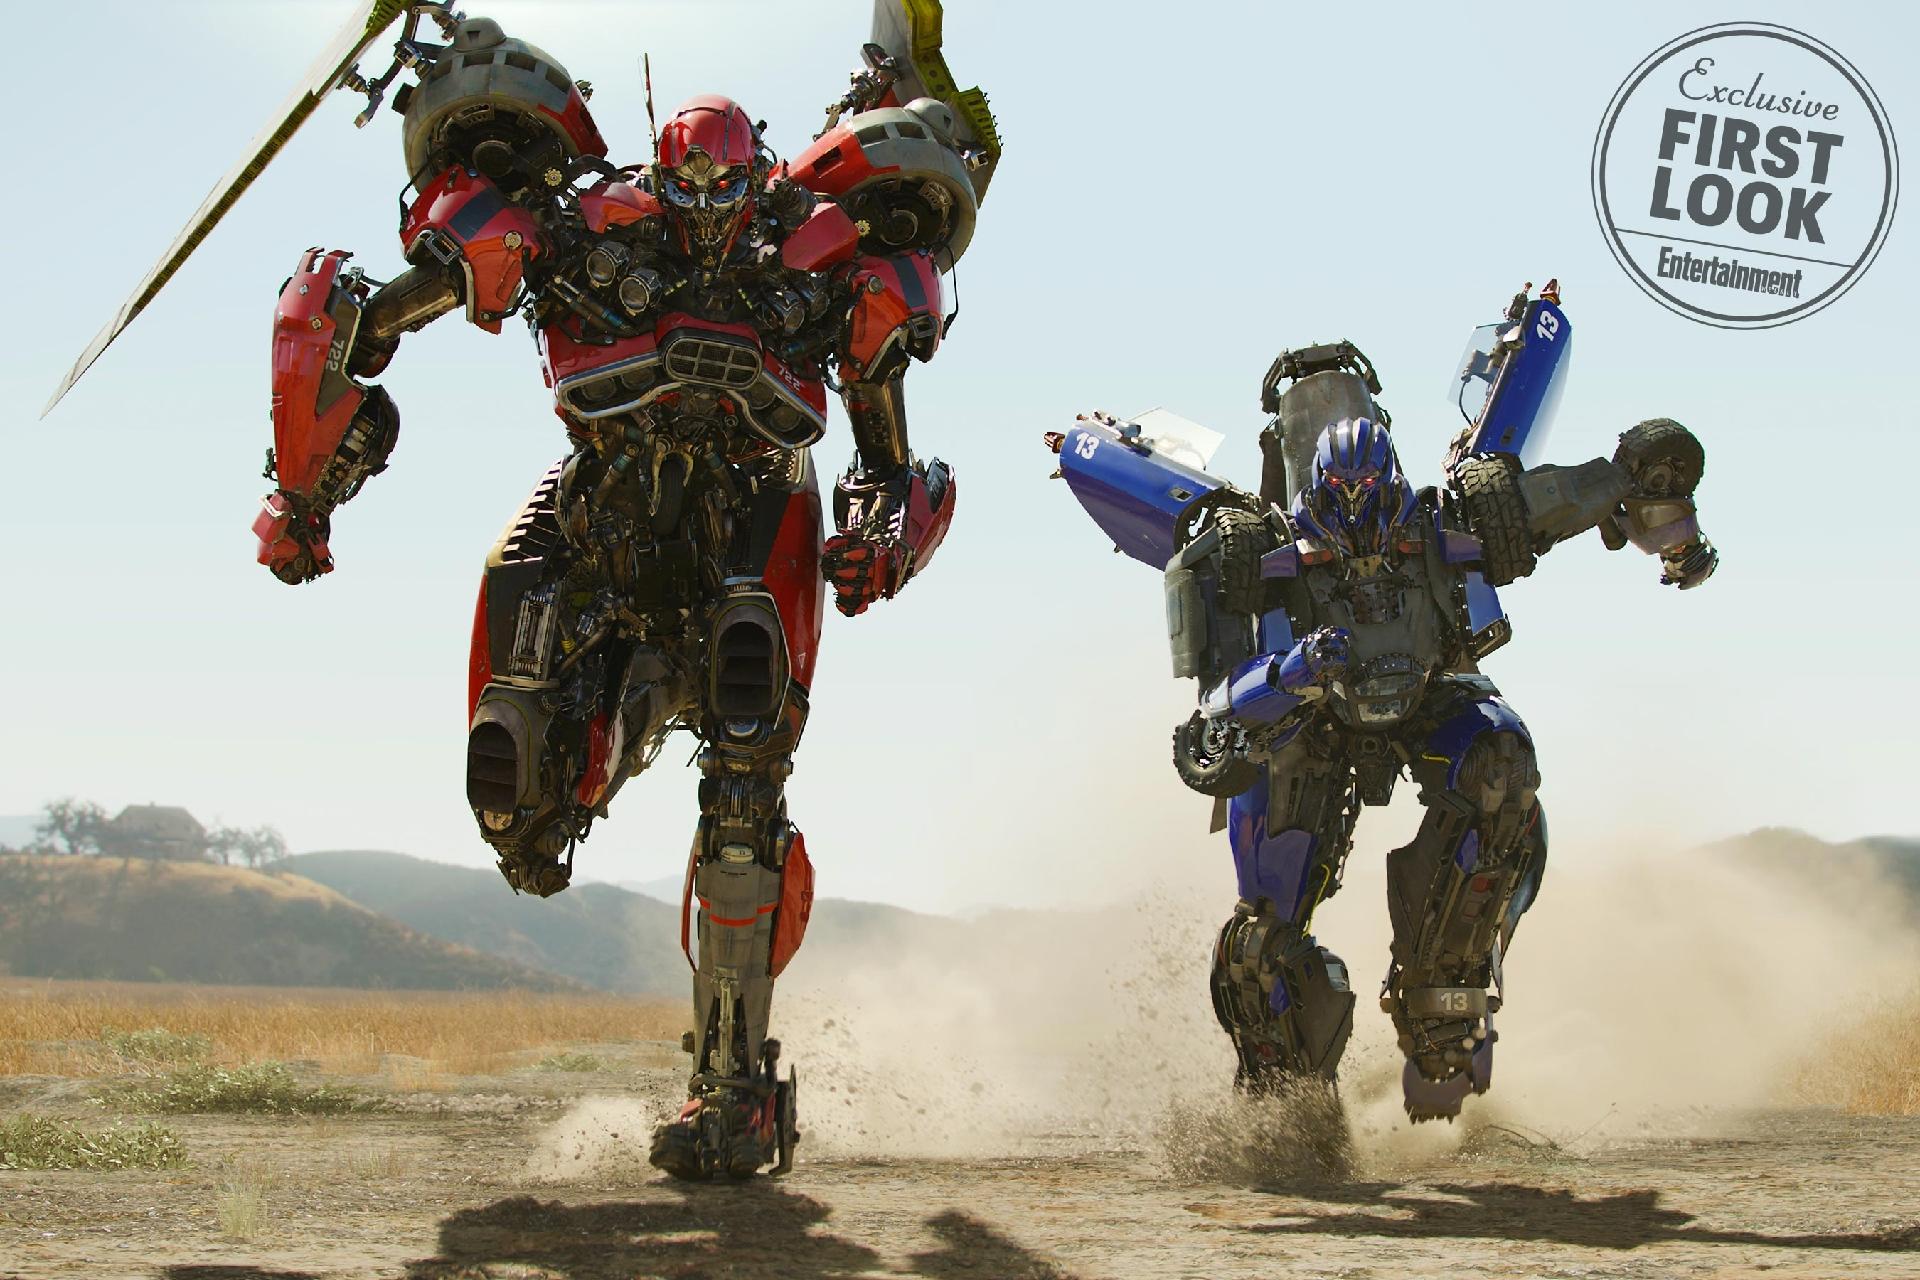 Transformers  Onde assistir a todos os filmes da franquia?